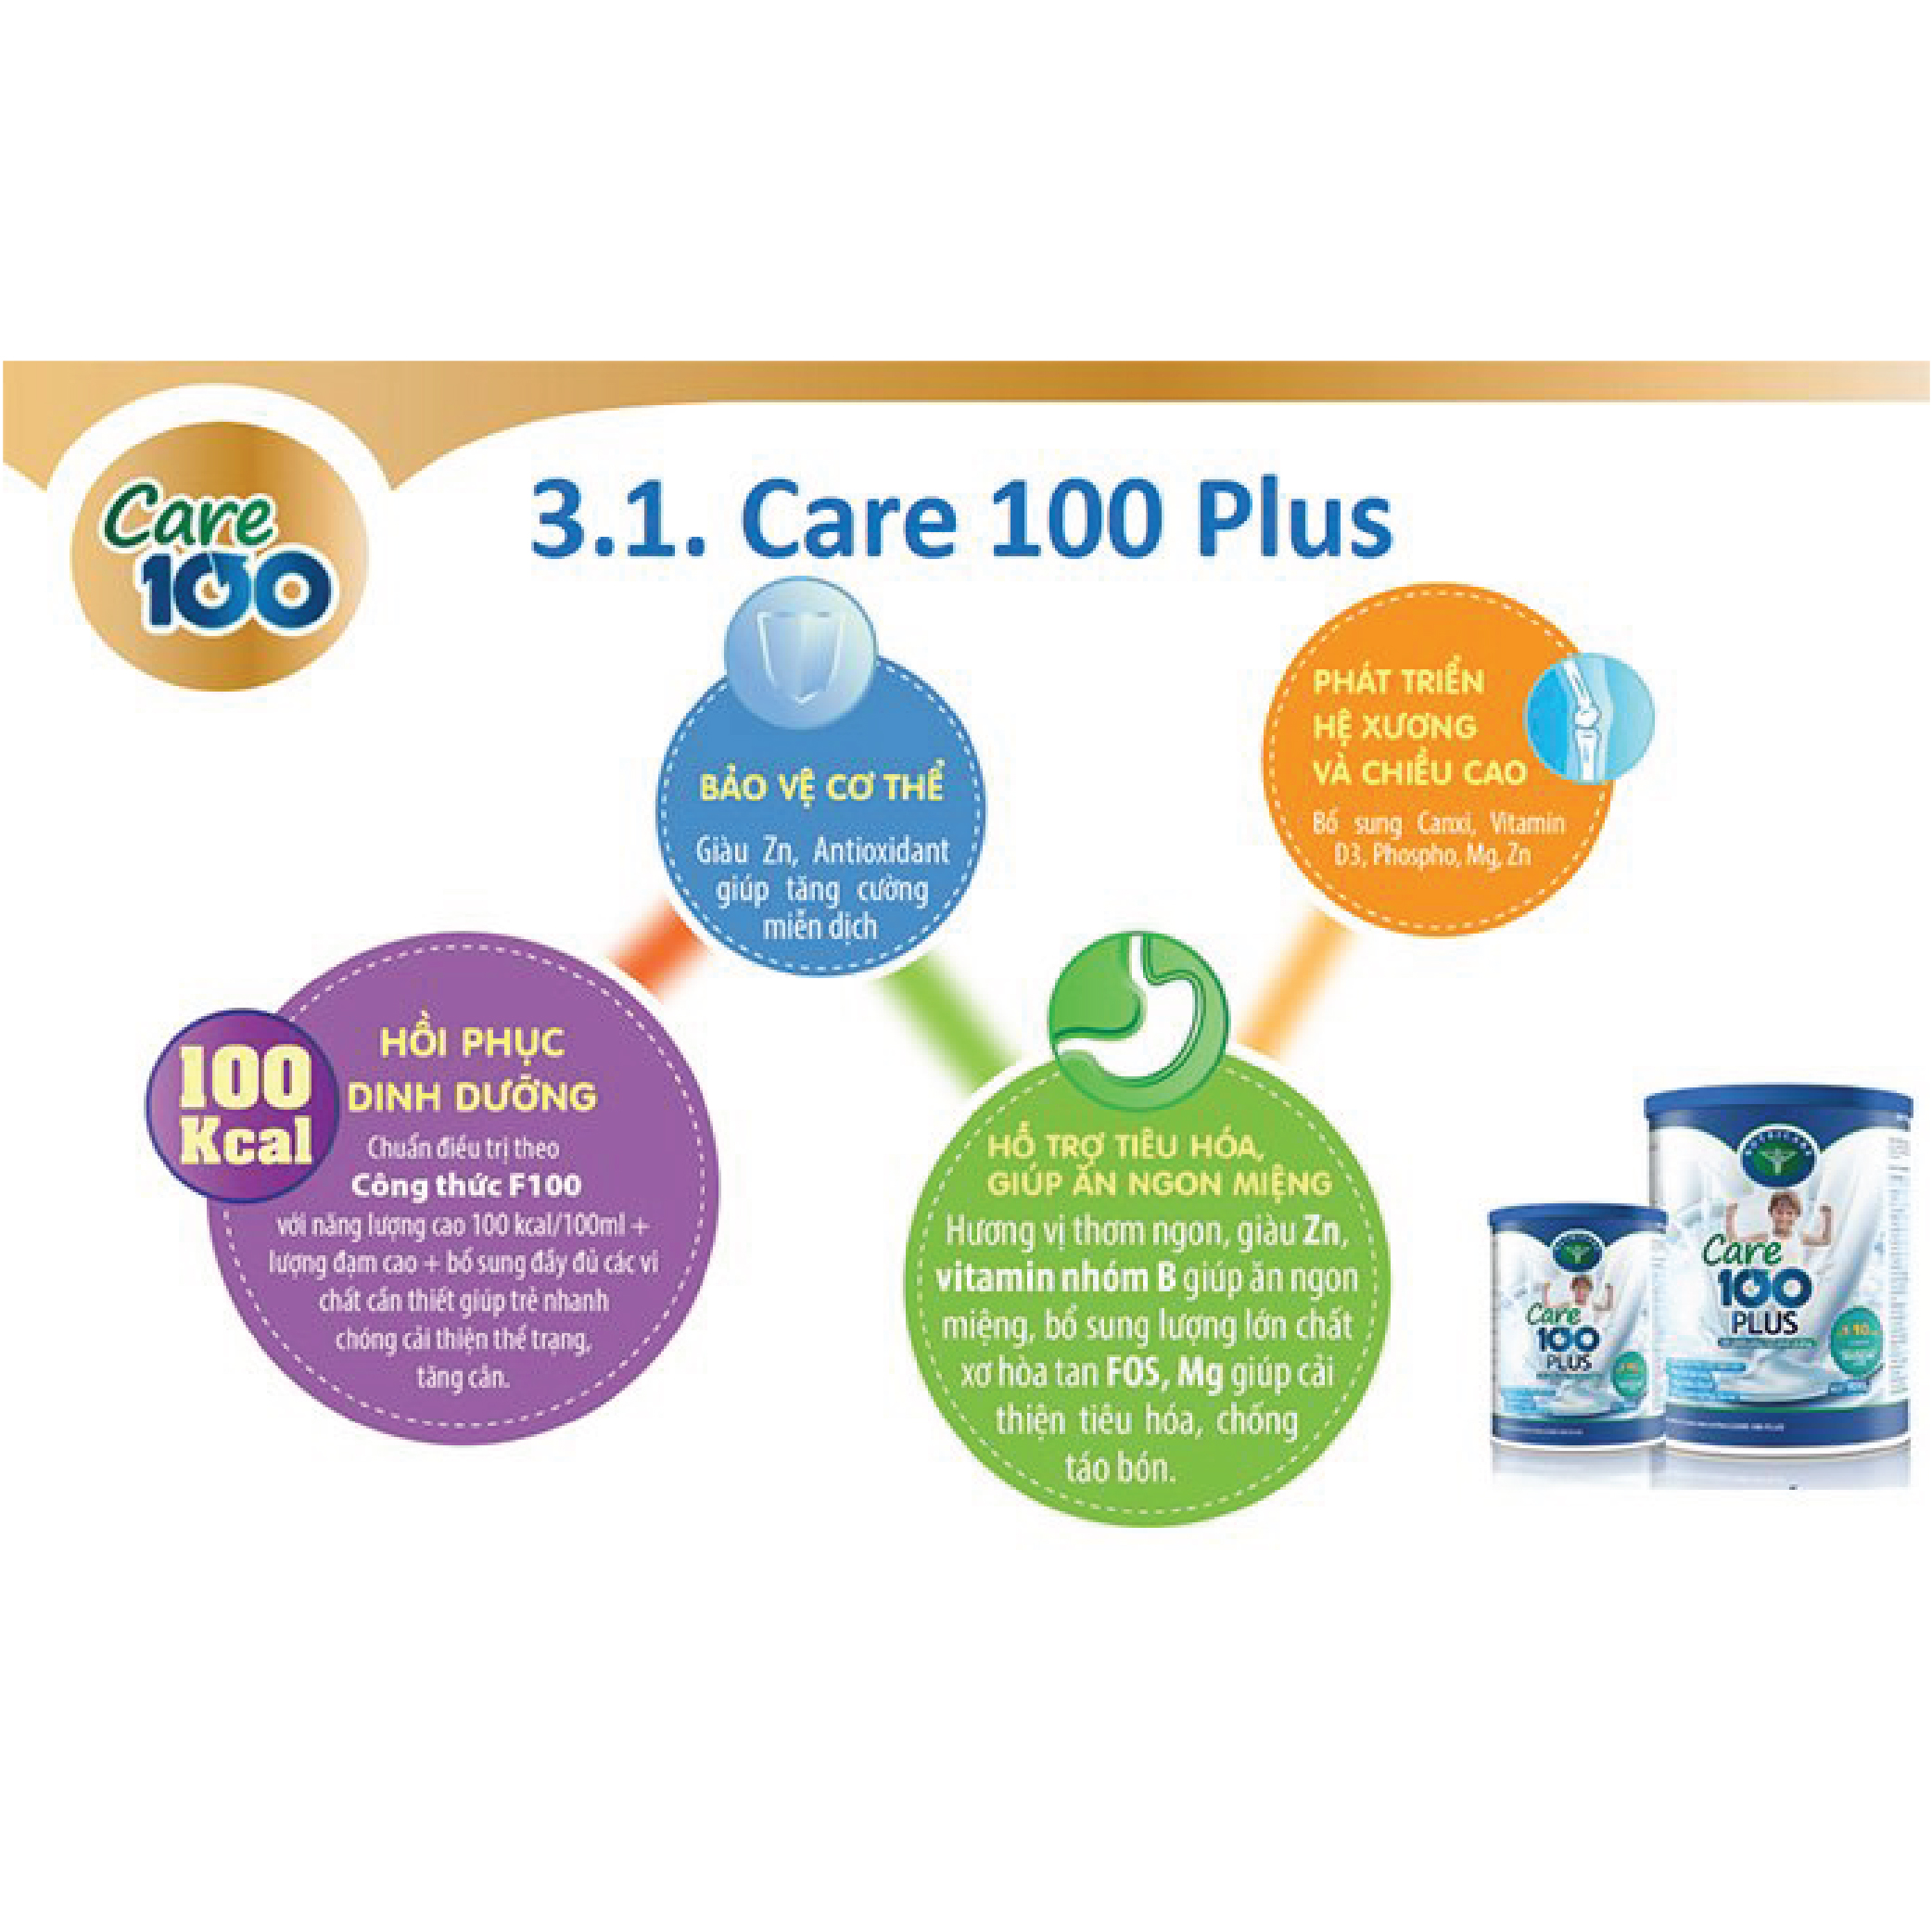 Sữa bột Nutricare Care 100 Plus phục hổi dinh dưỡng cho trẻ biếng ăn (900g)